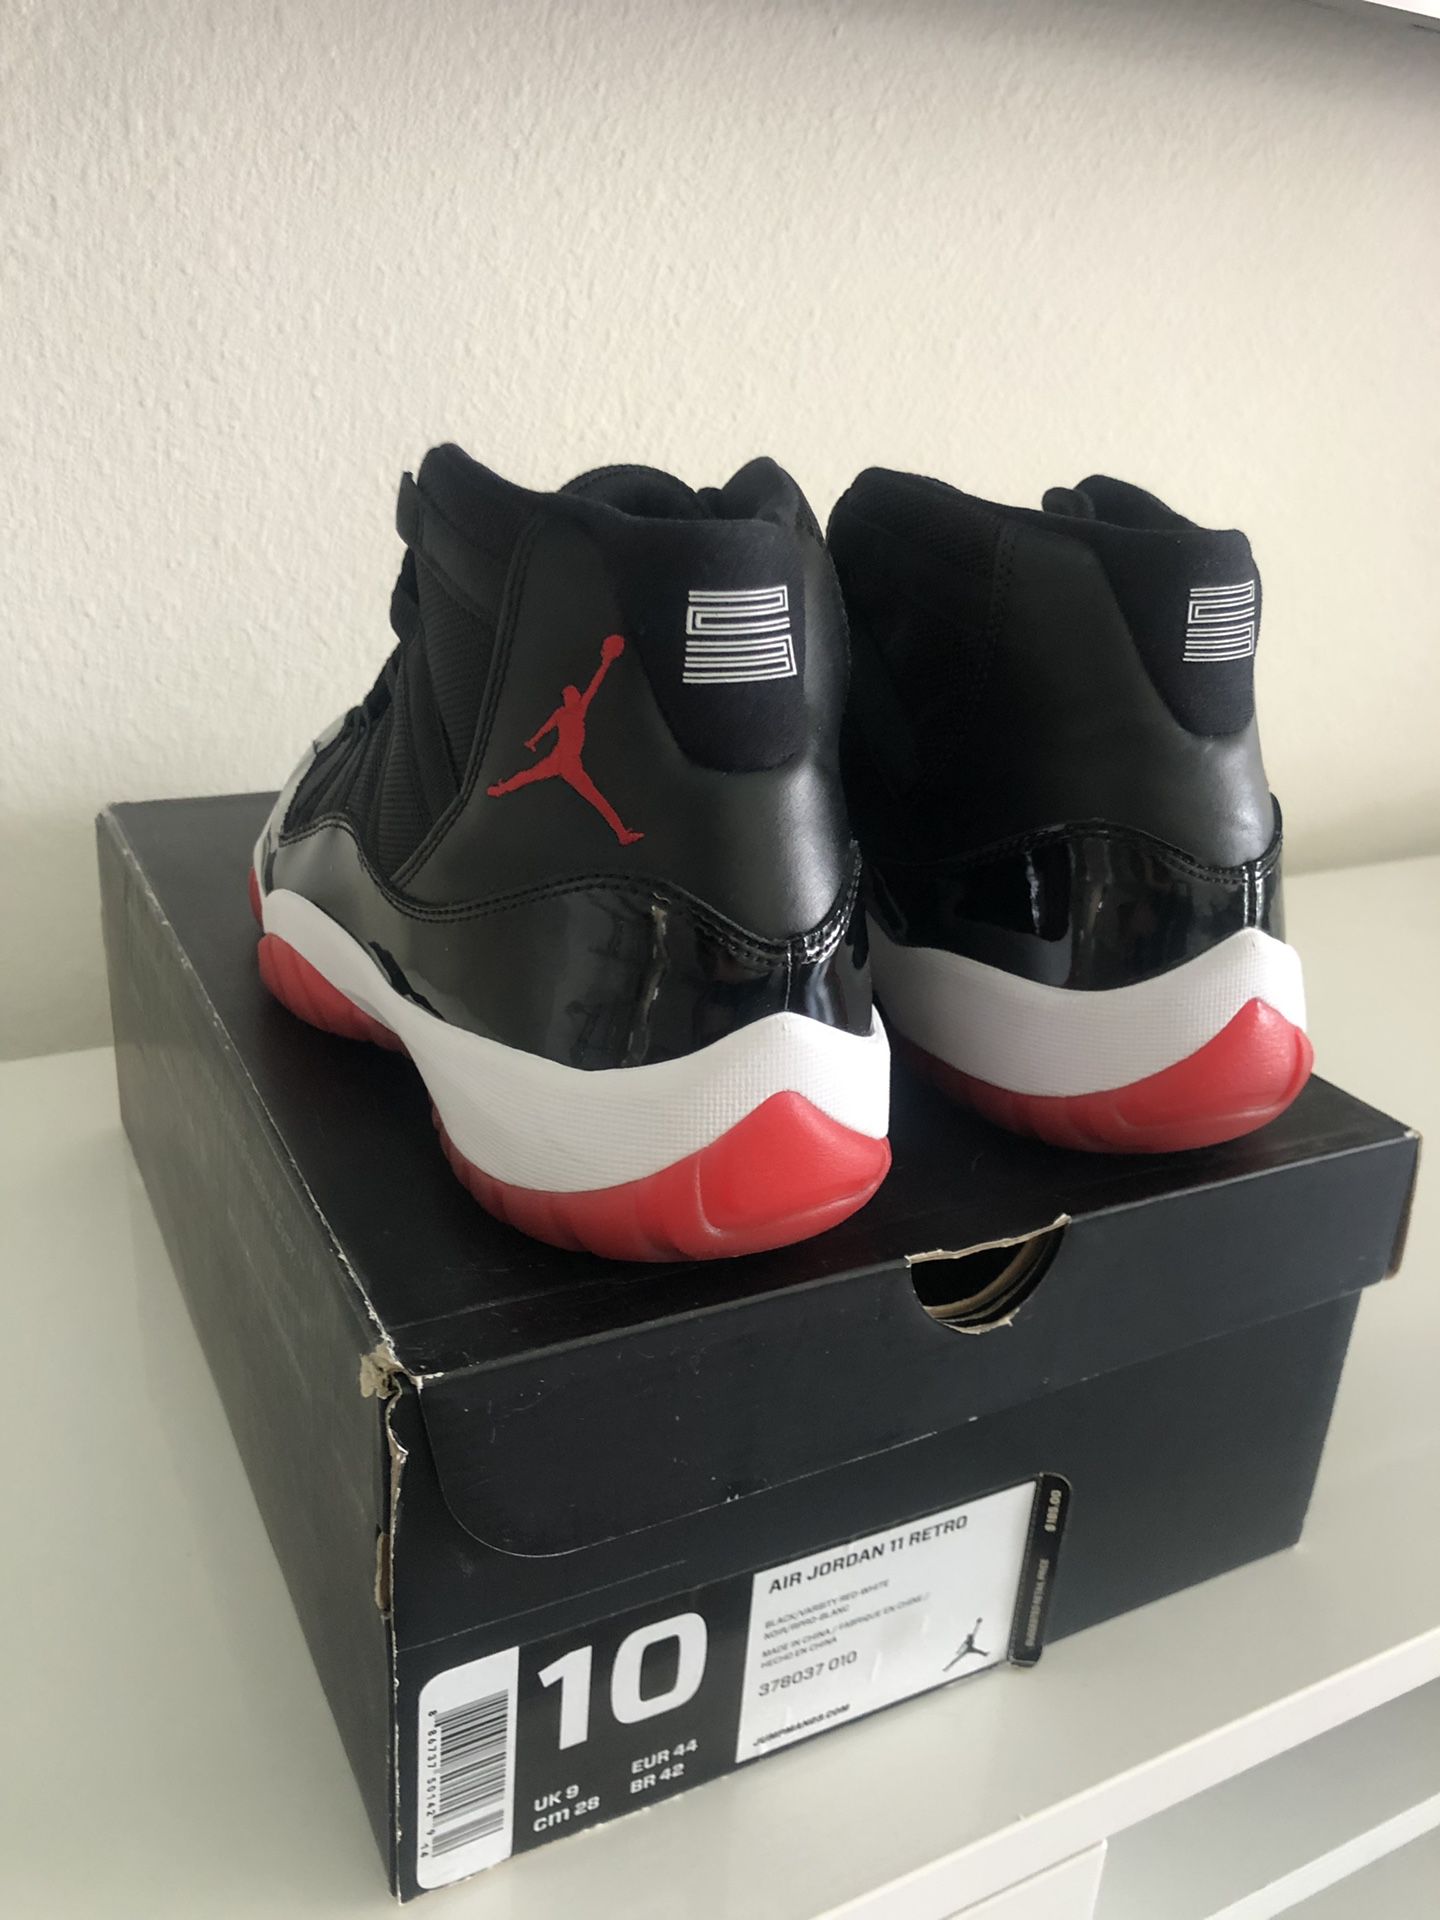 Air Jordan Bred 11’s (size 10)